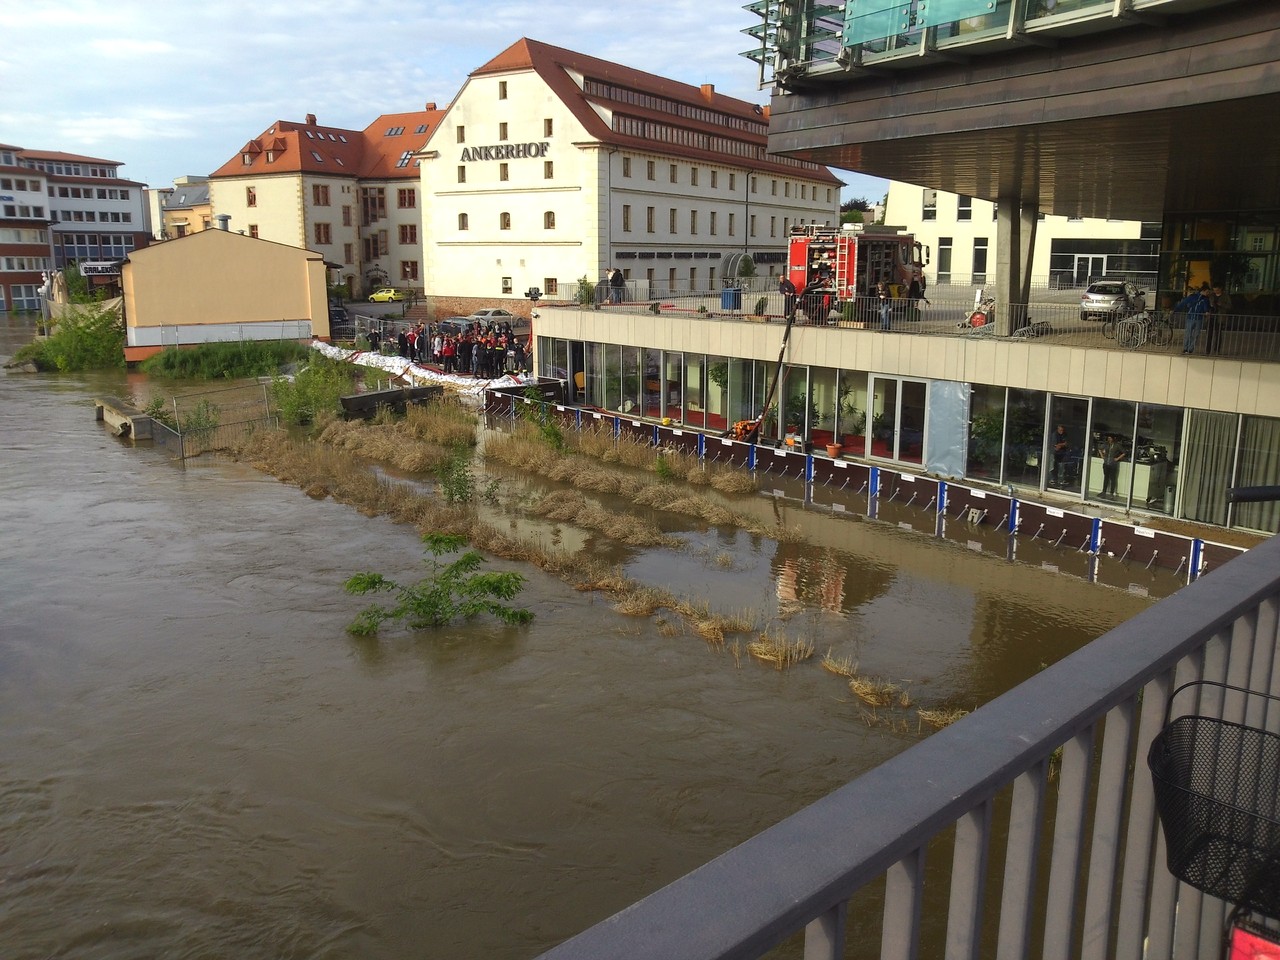 Mansfelder Brücke - noch hält die Spundwand bereits einen Tag später wird sie von den Fluten eingerissen und das Multimediazentrum geflutet